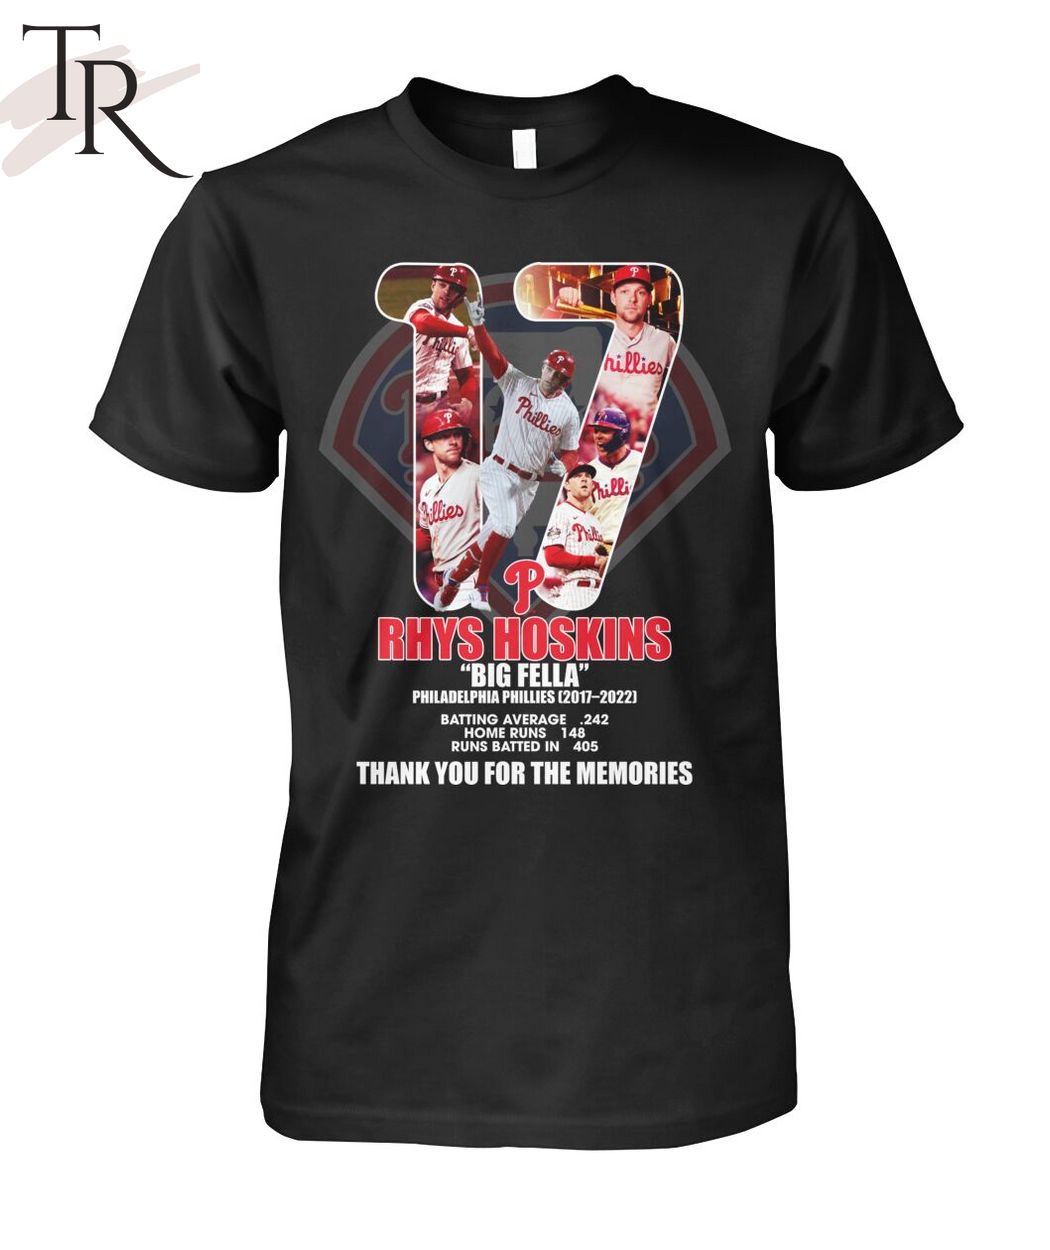 Rhys Hoskins Big Fella Philadelphia Phillies 2017 - 2022 Thank You For The Memories T-Shirt